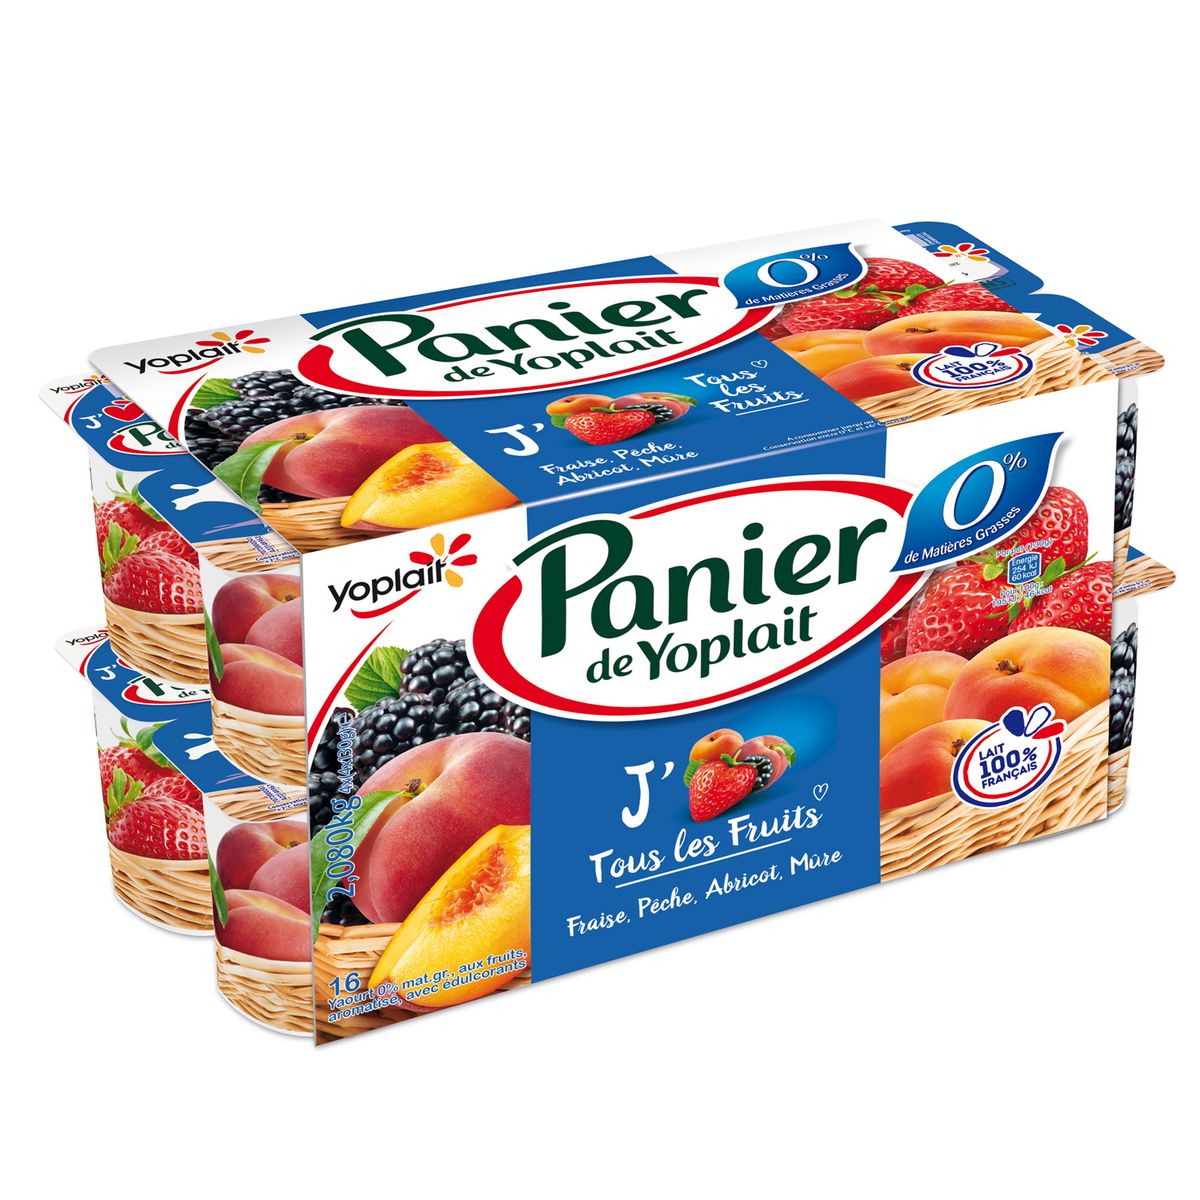 PANIER DE YOPLAIT Yaourt allégé aux fruits panaché 0% 16x130g